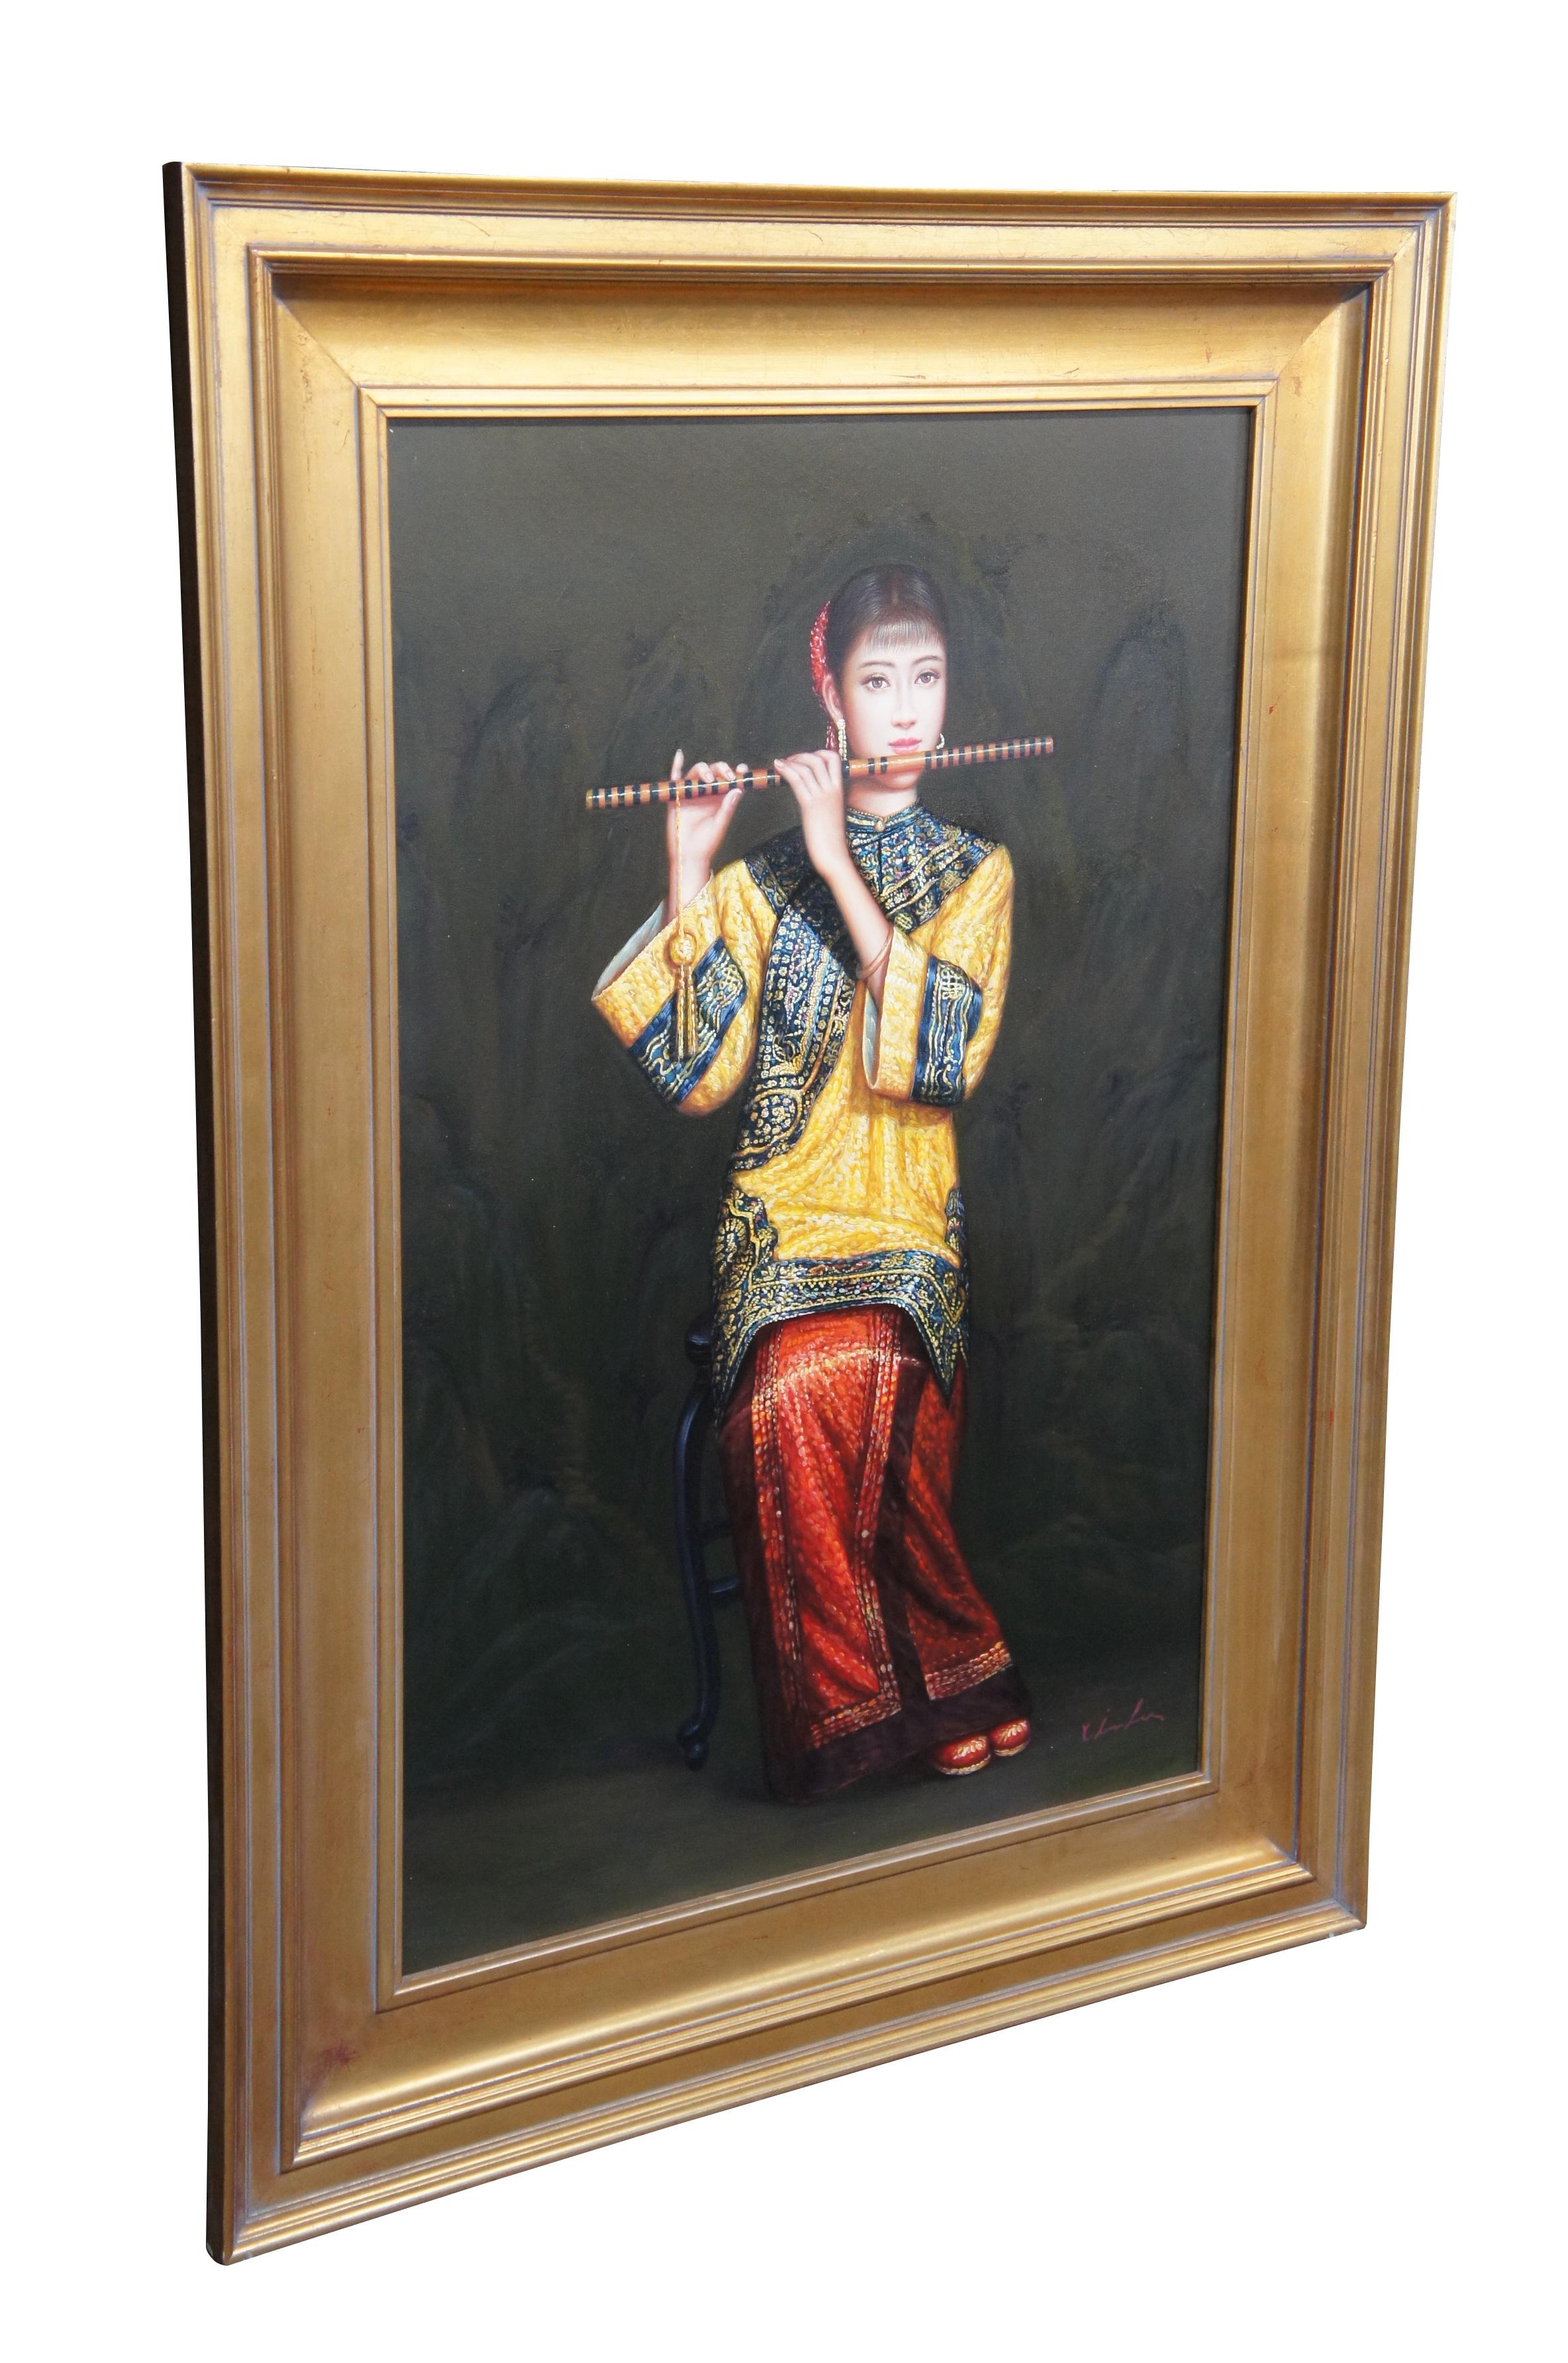 Vintage Chinese Frau spielt Flöte Ölgemälde auf Leinwand nach Chen Yifei.  Darstellung eines jungen Musikers in traditioneller Hofkleidung, der die Dizi / Bambusflöte spielt.

Chen Yifei (chinesisch: 陈逸飞; 12. April 1946 - 10. April 2005) war ein